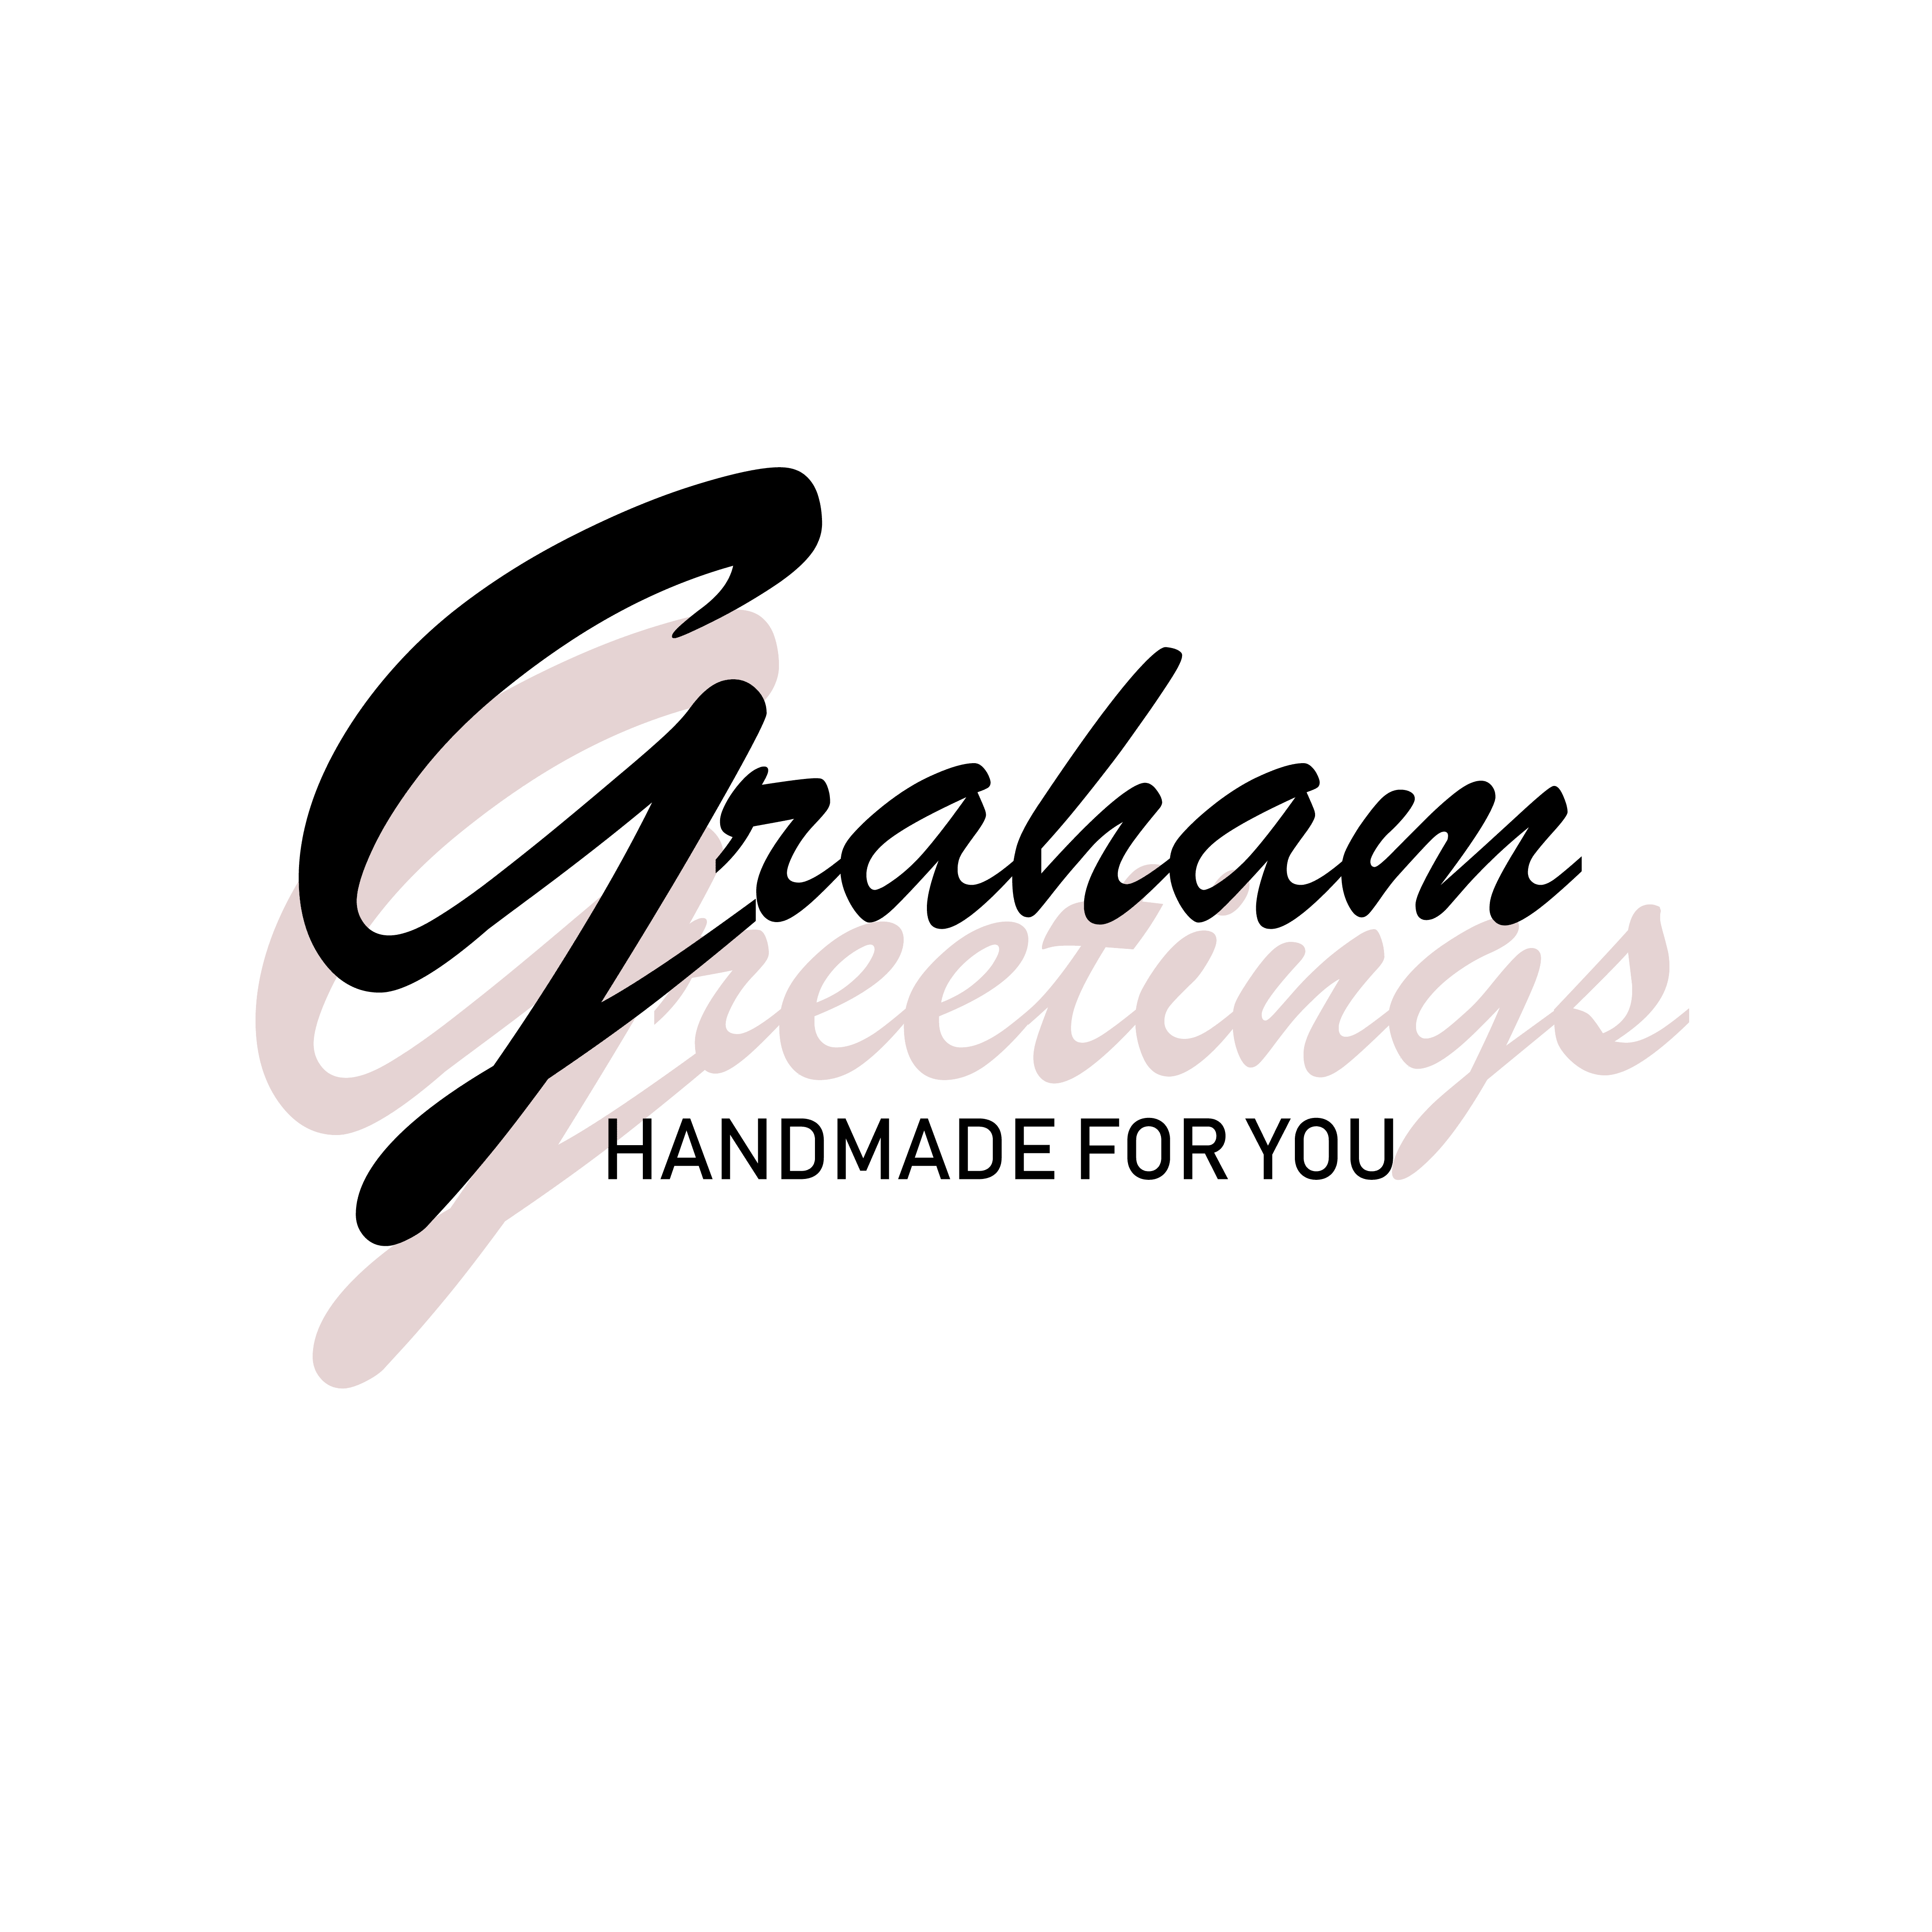 Graham Greetings